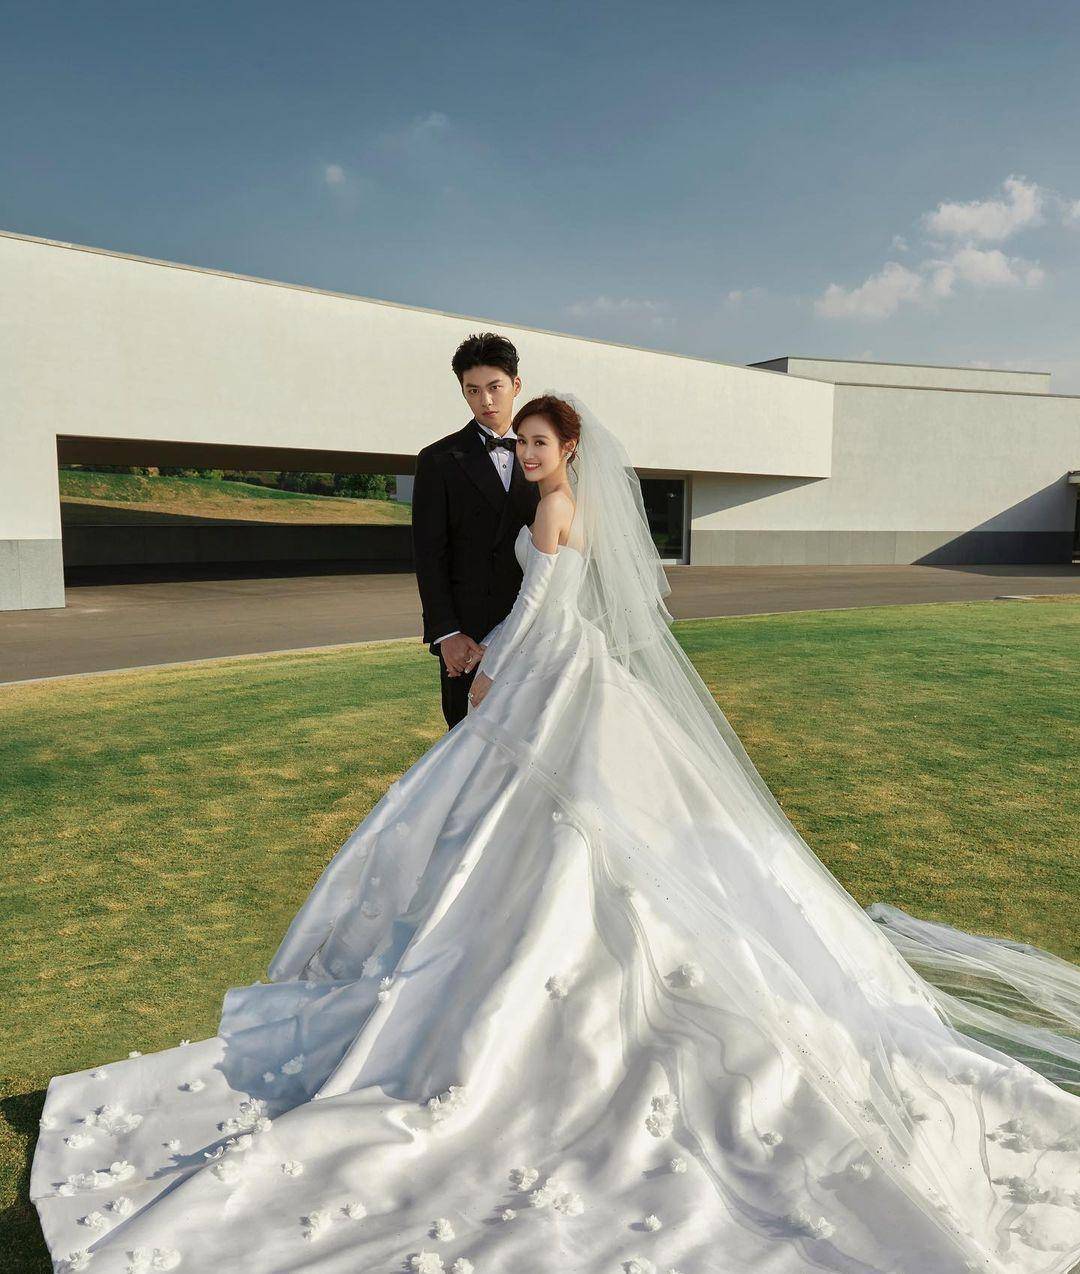 吴姗儒今年1月29日大婚,嫁给交往5年的男友王先生,身为「综艺天王」